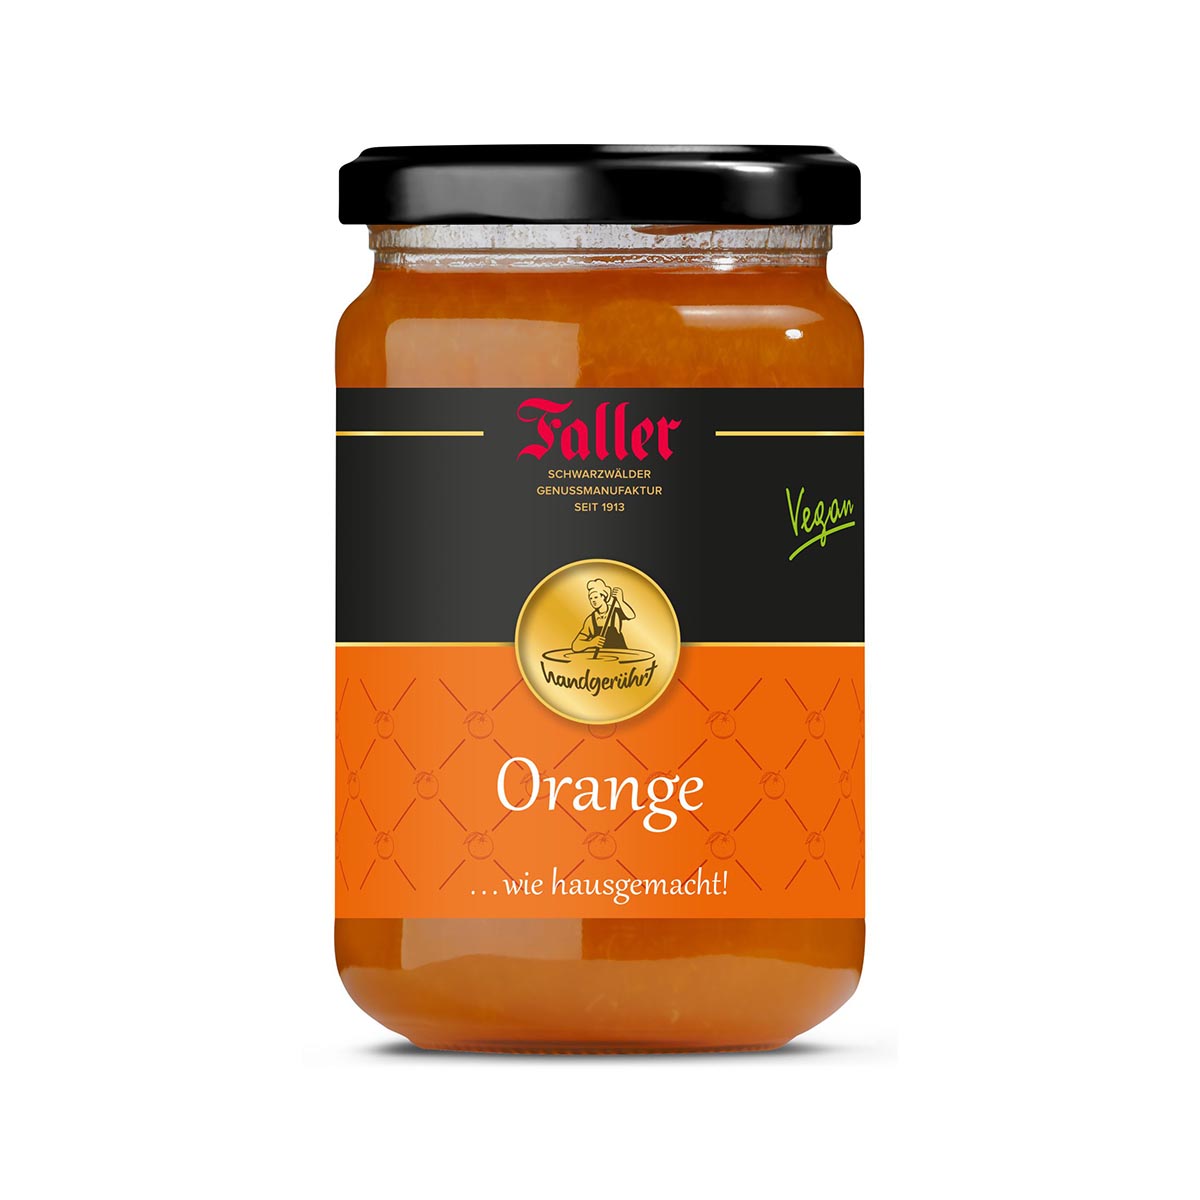 Fruchtaufstriche aus dem Schwarzwald Faller Orangen Marmelade extra wie hausgemacht! mit 60% Frucht 330 Gramm